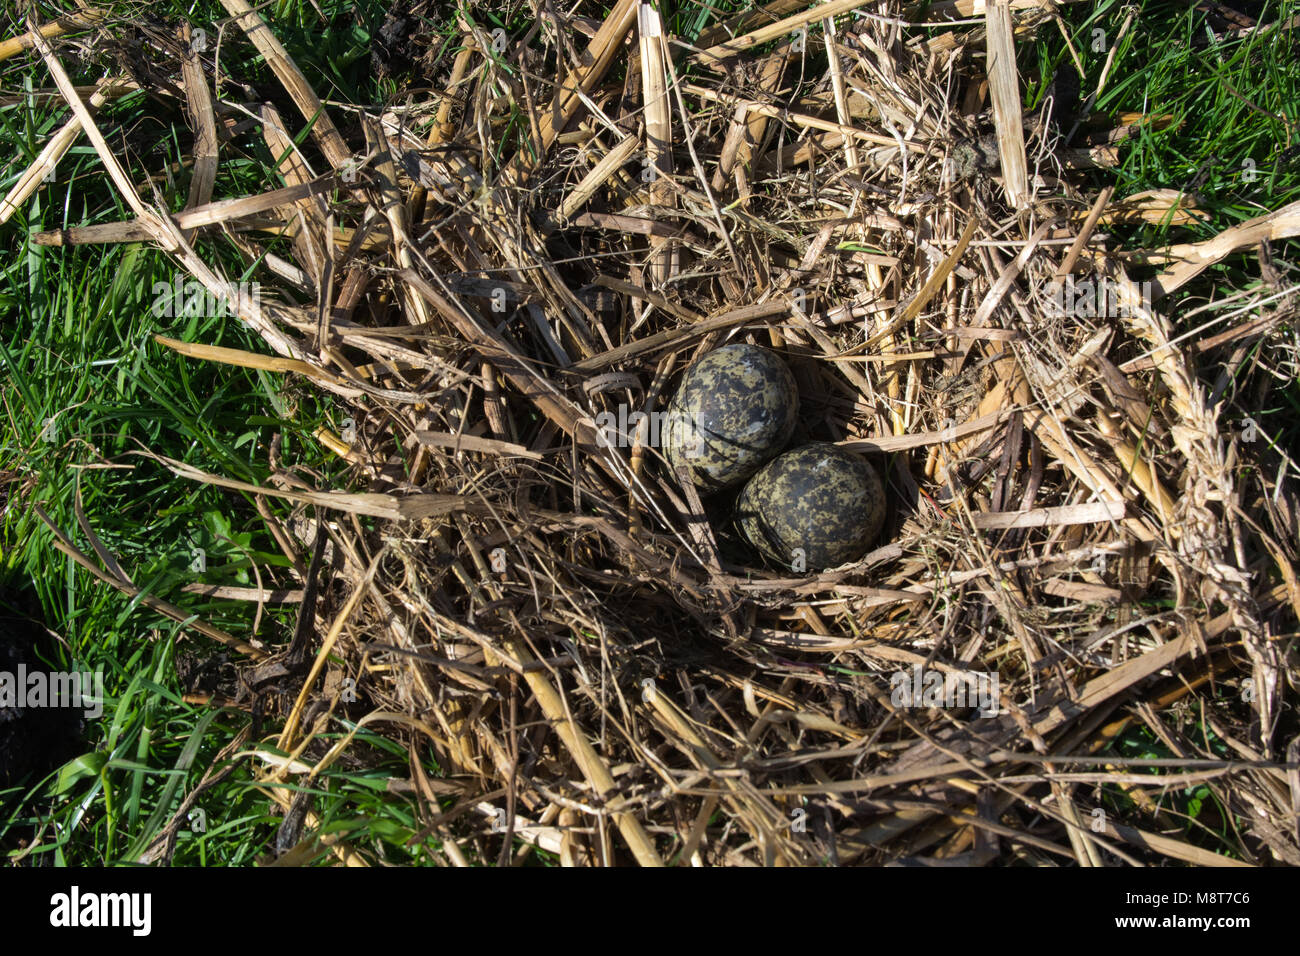 Rennen Bespreken hop Nest van een Kievit met eieren; Nest of Northern Lapwing (Vanellus  vanellus) wth two eggs Stock Photo - Alamy